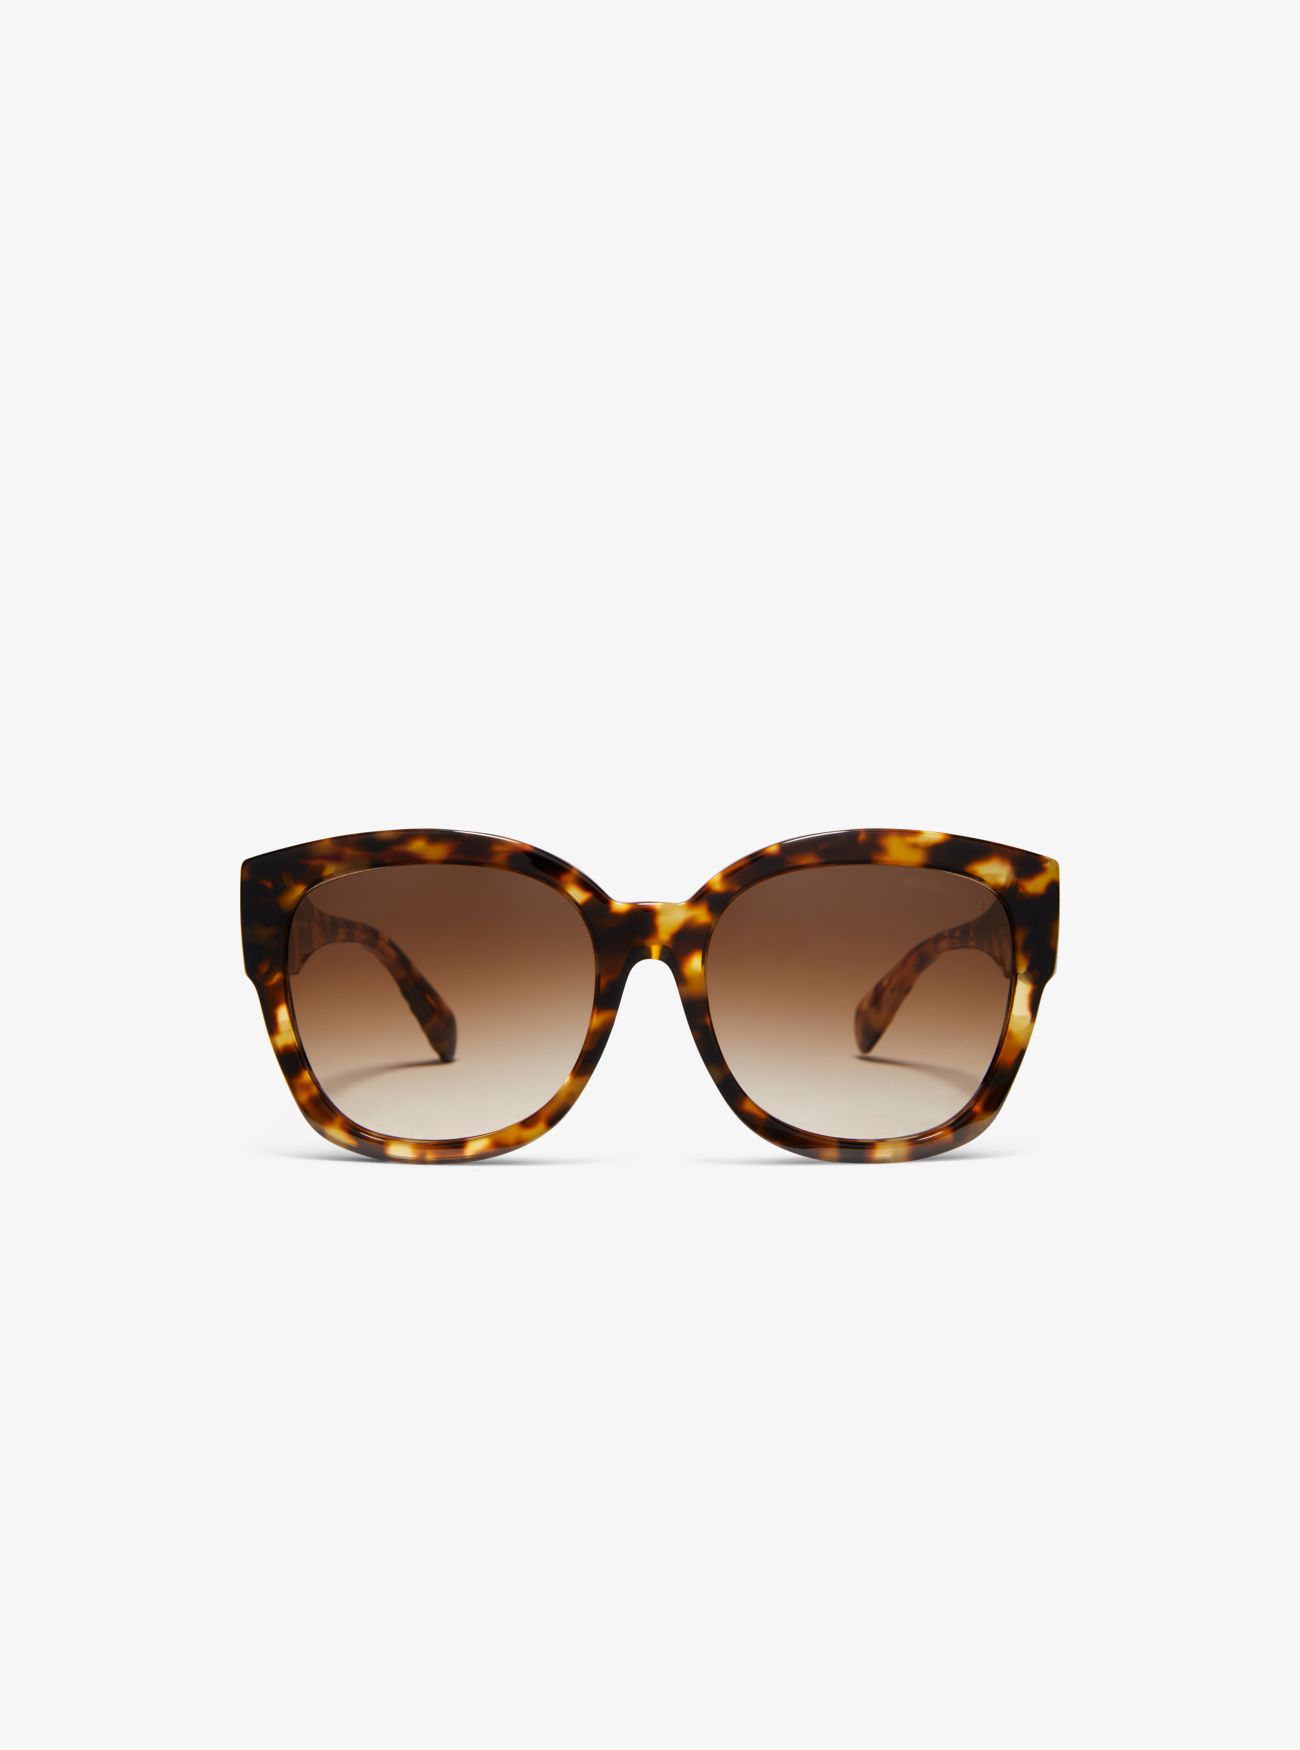 MK Baja Sunglasses - Brown - Michael Kors